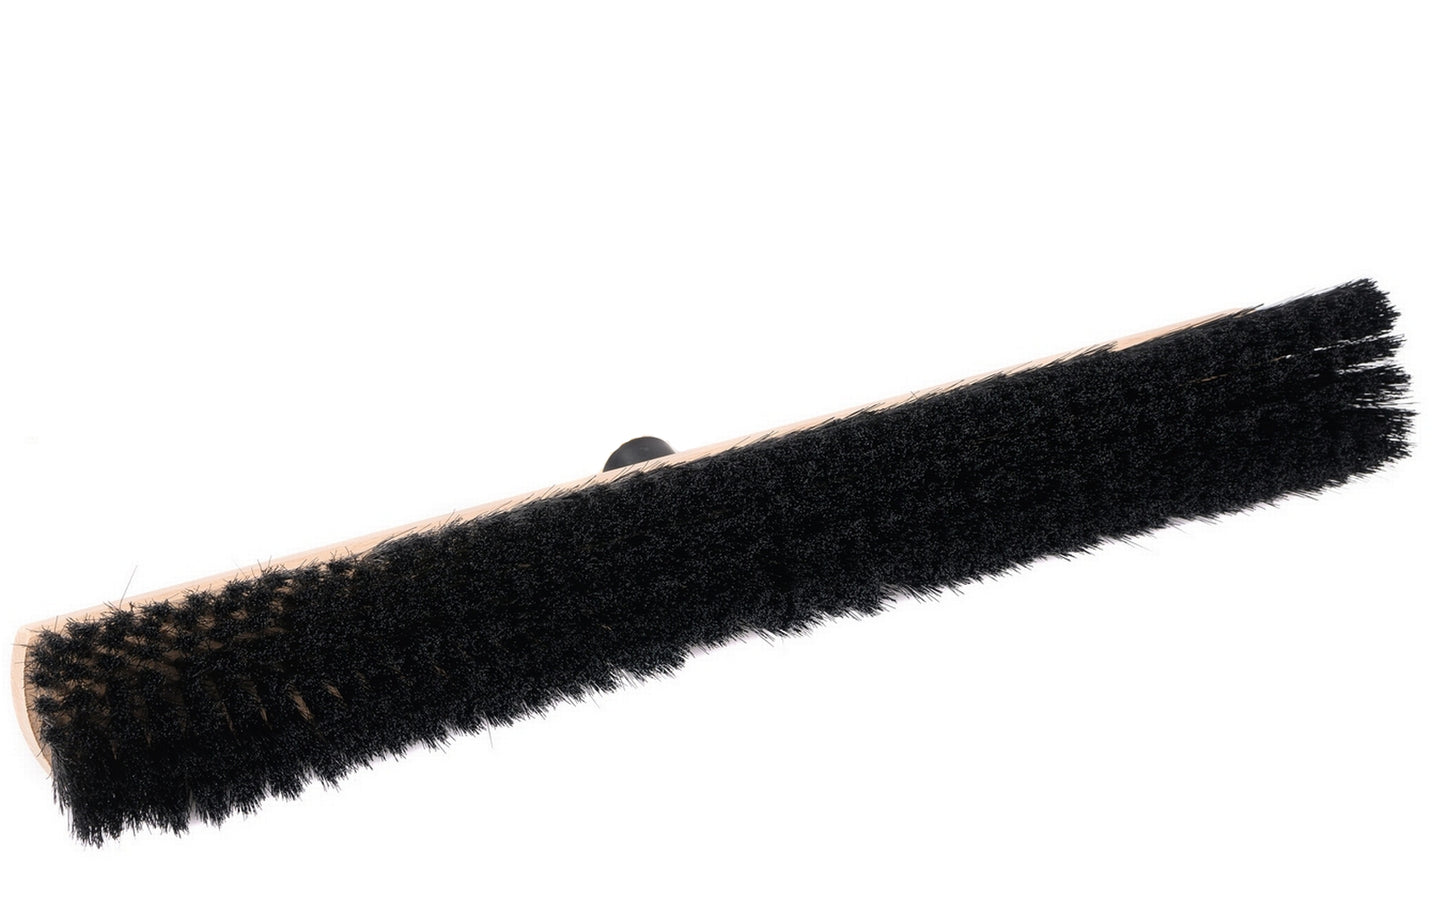 Saalbesen Kunsthaar Borsten schwarz mit Kunststoffhalter für Standardstiele, ohne Stiel